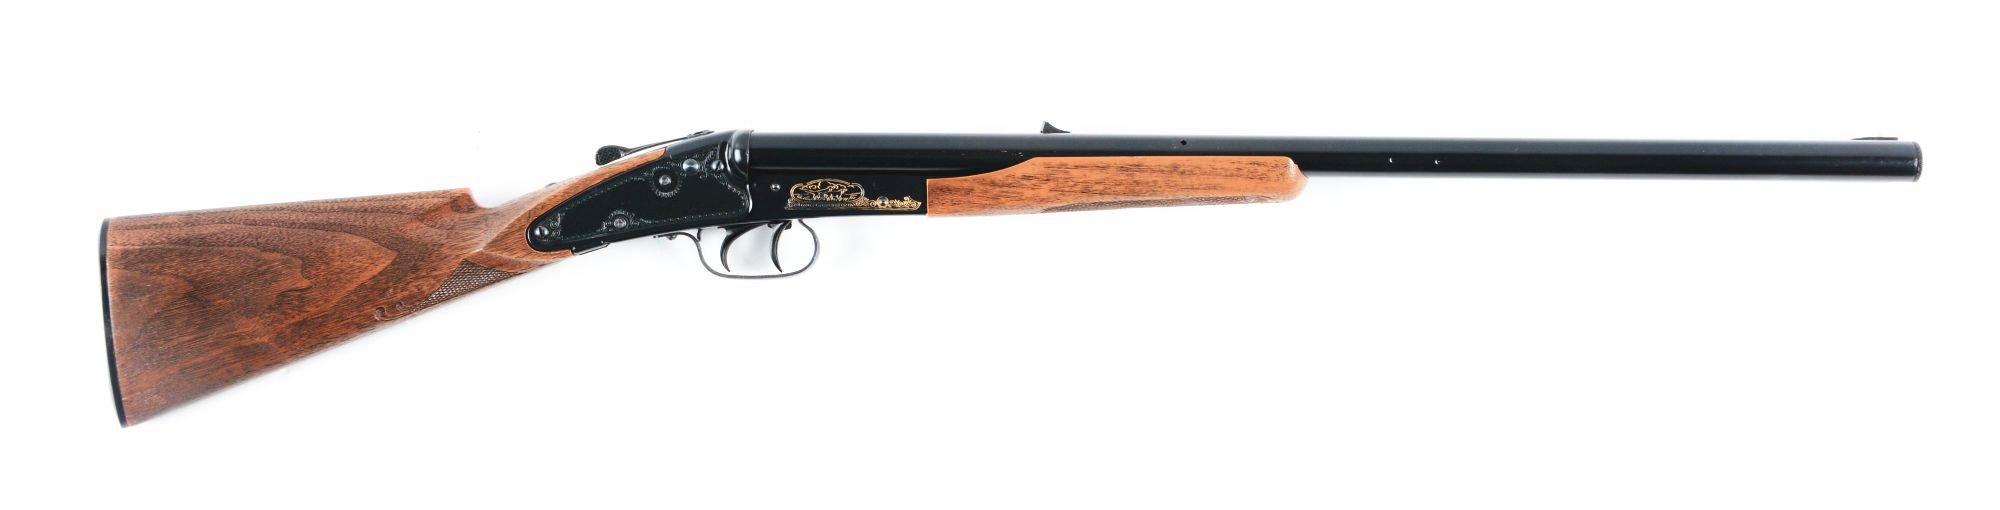 Daisy Model 21 SxS BB Gun.